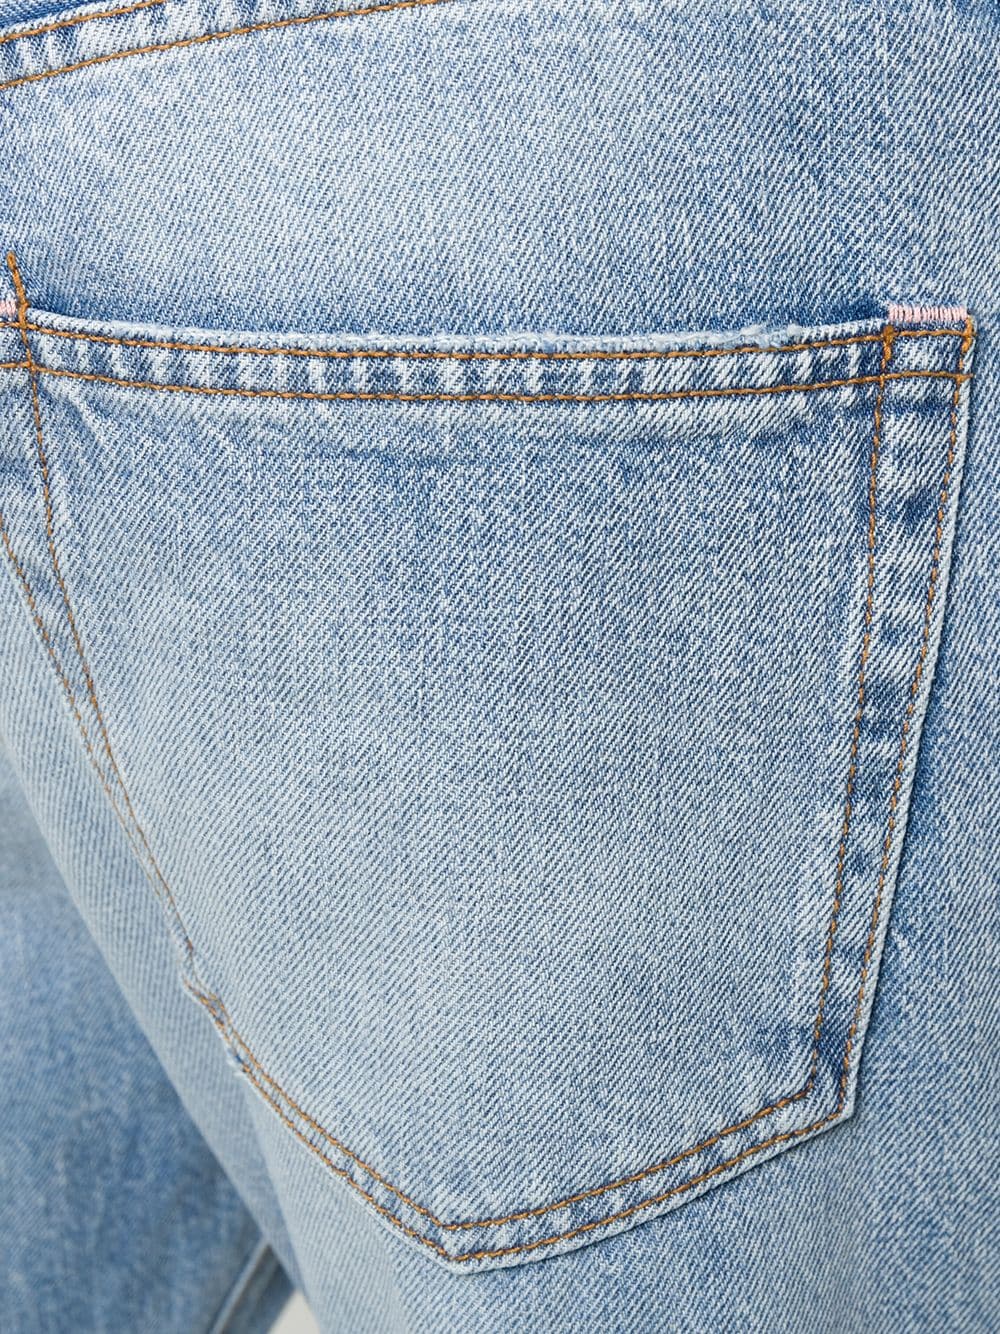 фото Acne studios джинсы прямого кроя